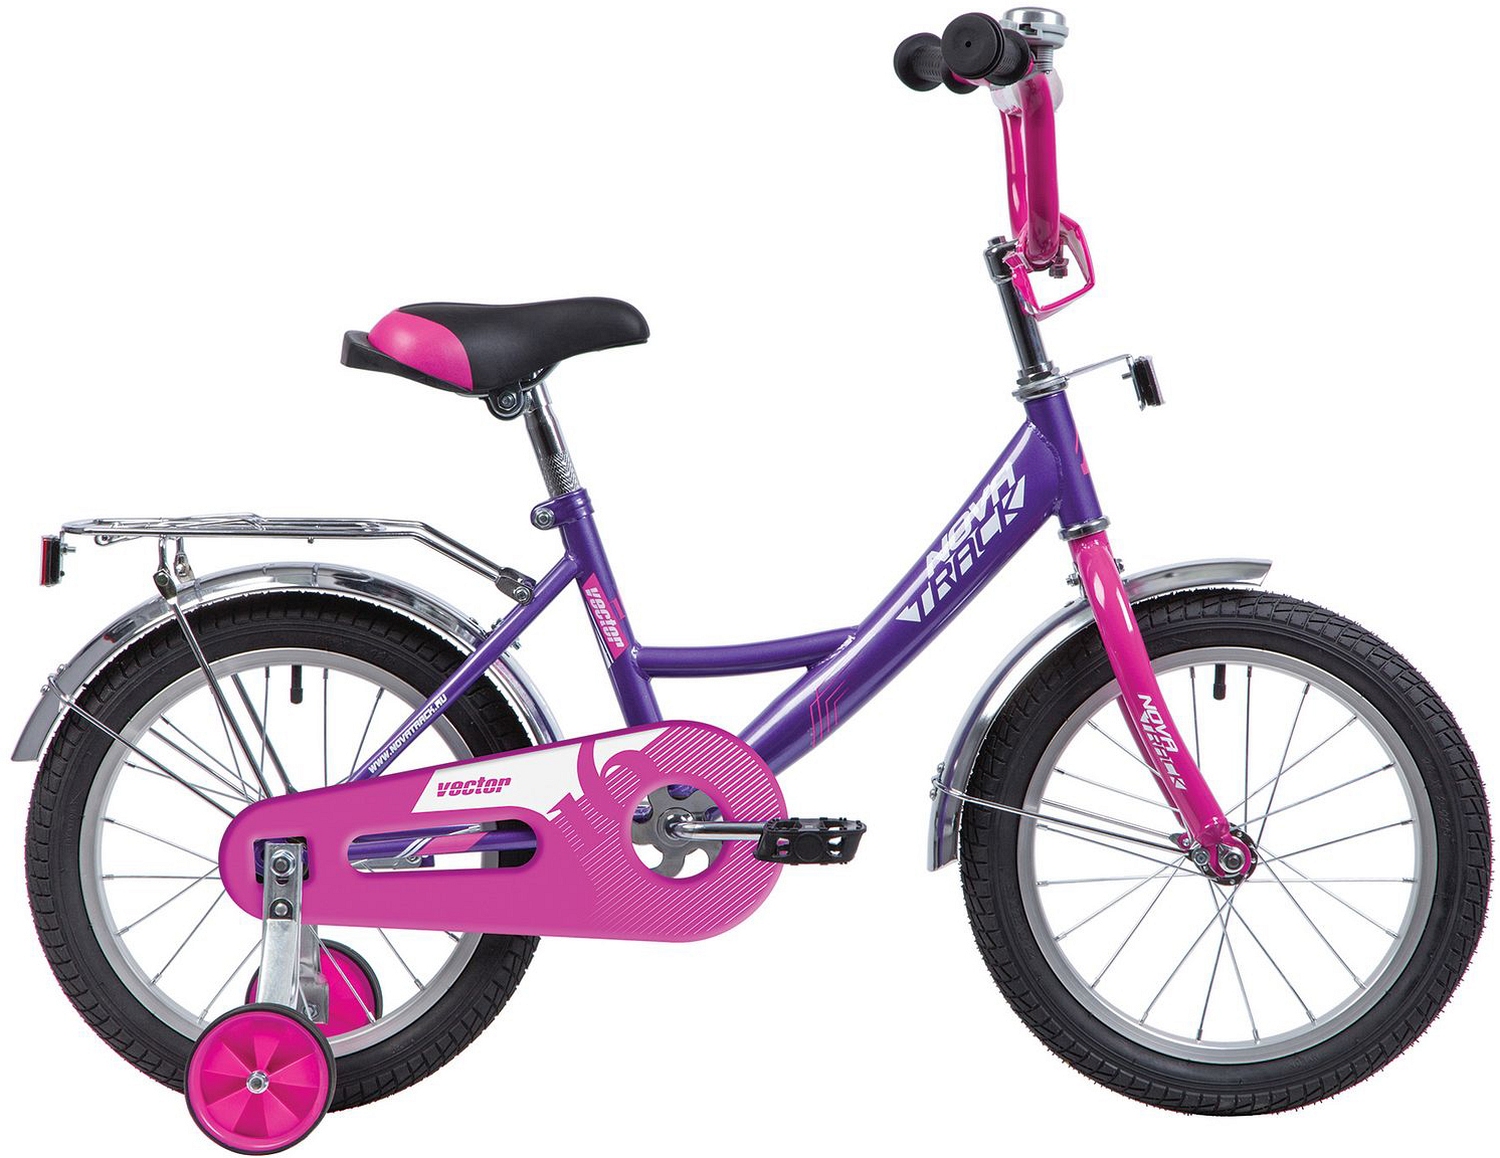  Отзывы о Детском велосипеде Novatrack Vector 12 2020